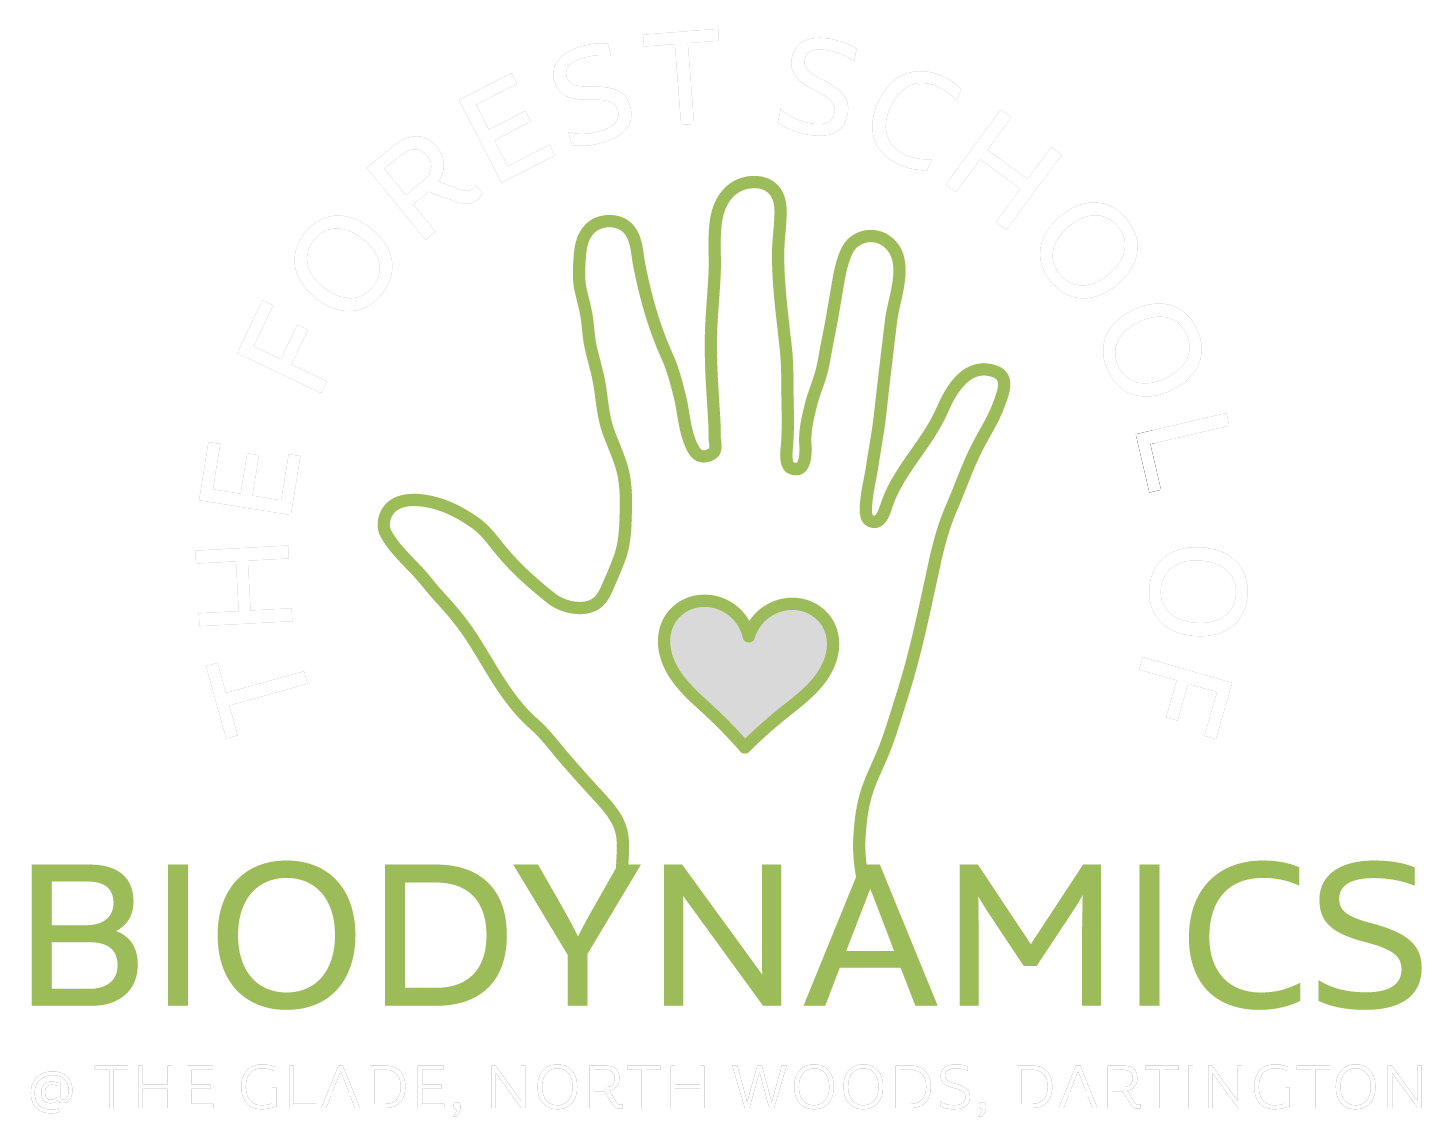 forest school of biodynamics